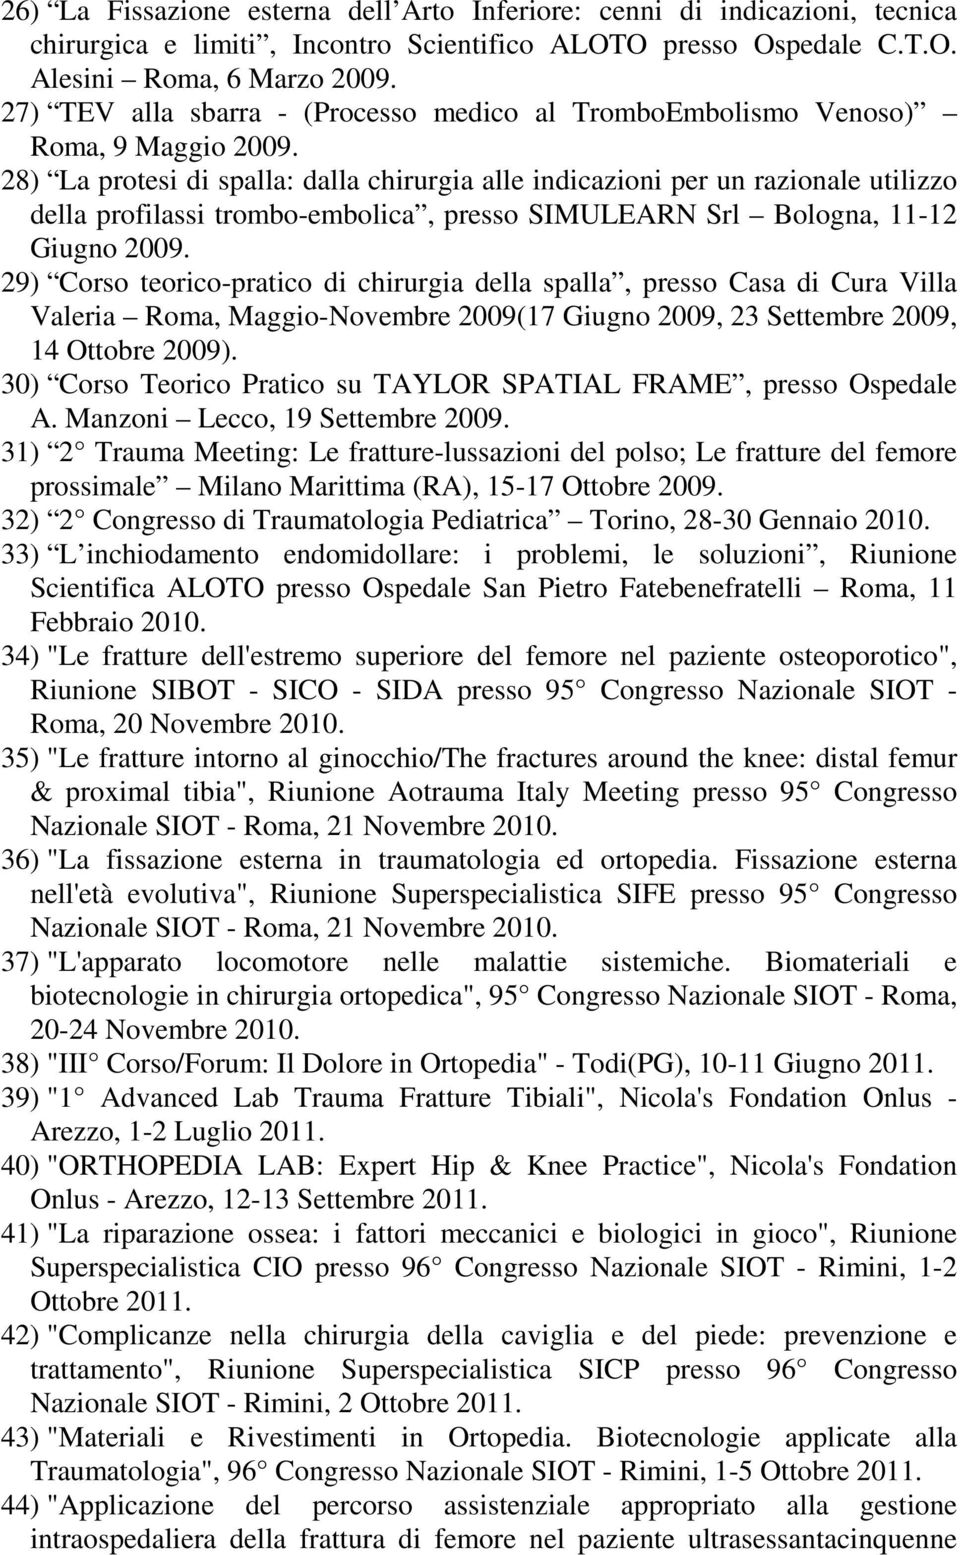 28) La protesi di spalla: dalla chirurgia alle indicazioni per un razionale utilizzo della profilassi trombo-embolica, presso SIMULEARN Srl Bologna, 11-12 Giugno 2009.